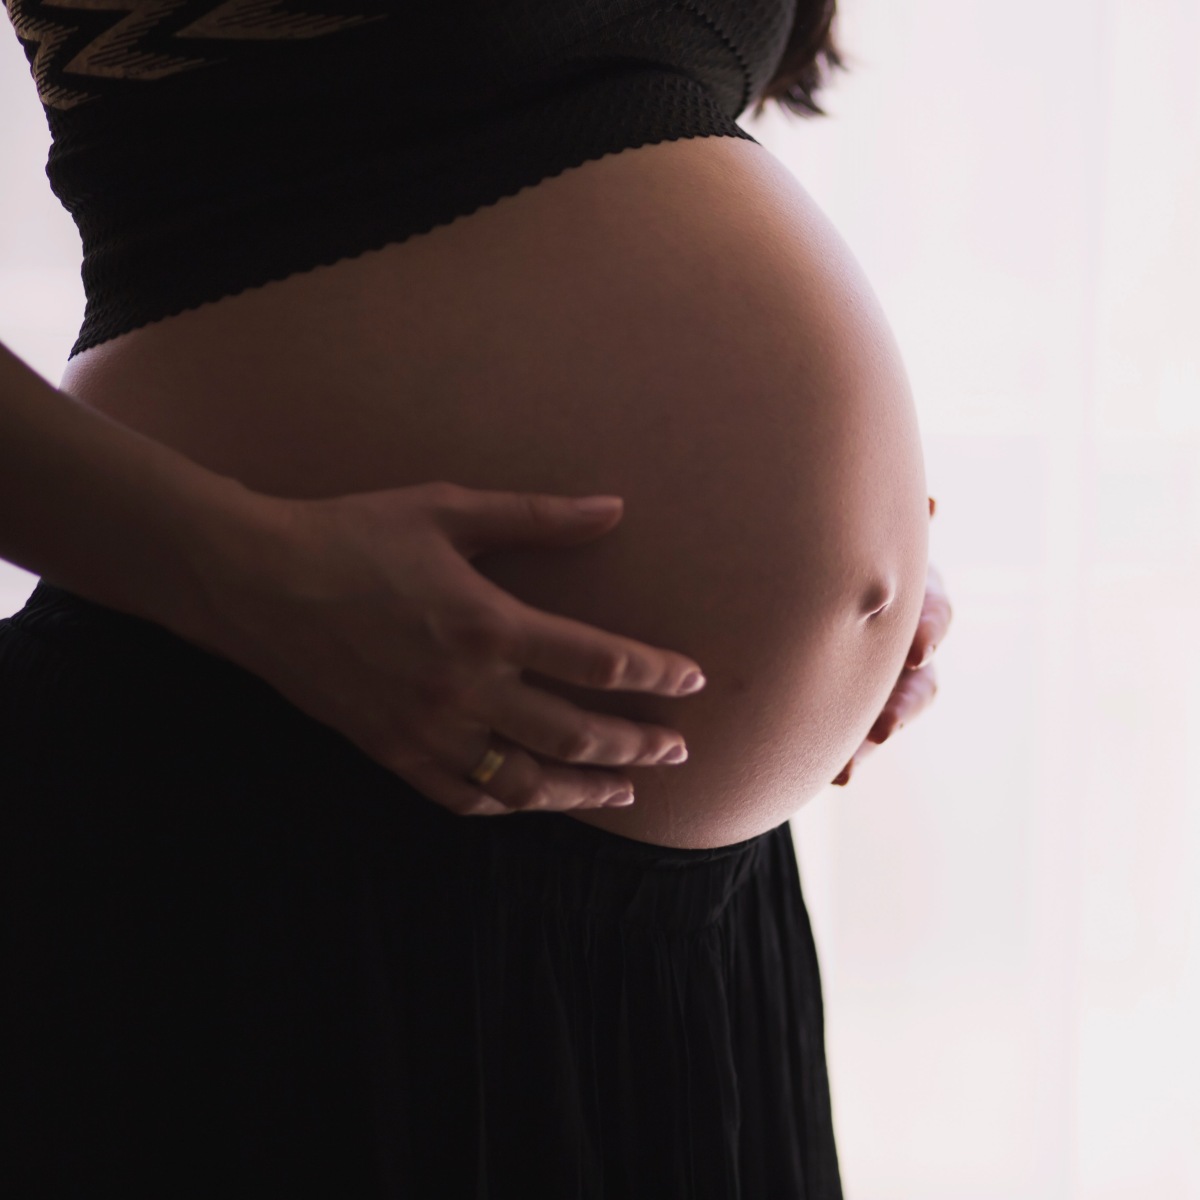 ¿Por qué el embarazo dura 9 meses en los humanos?